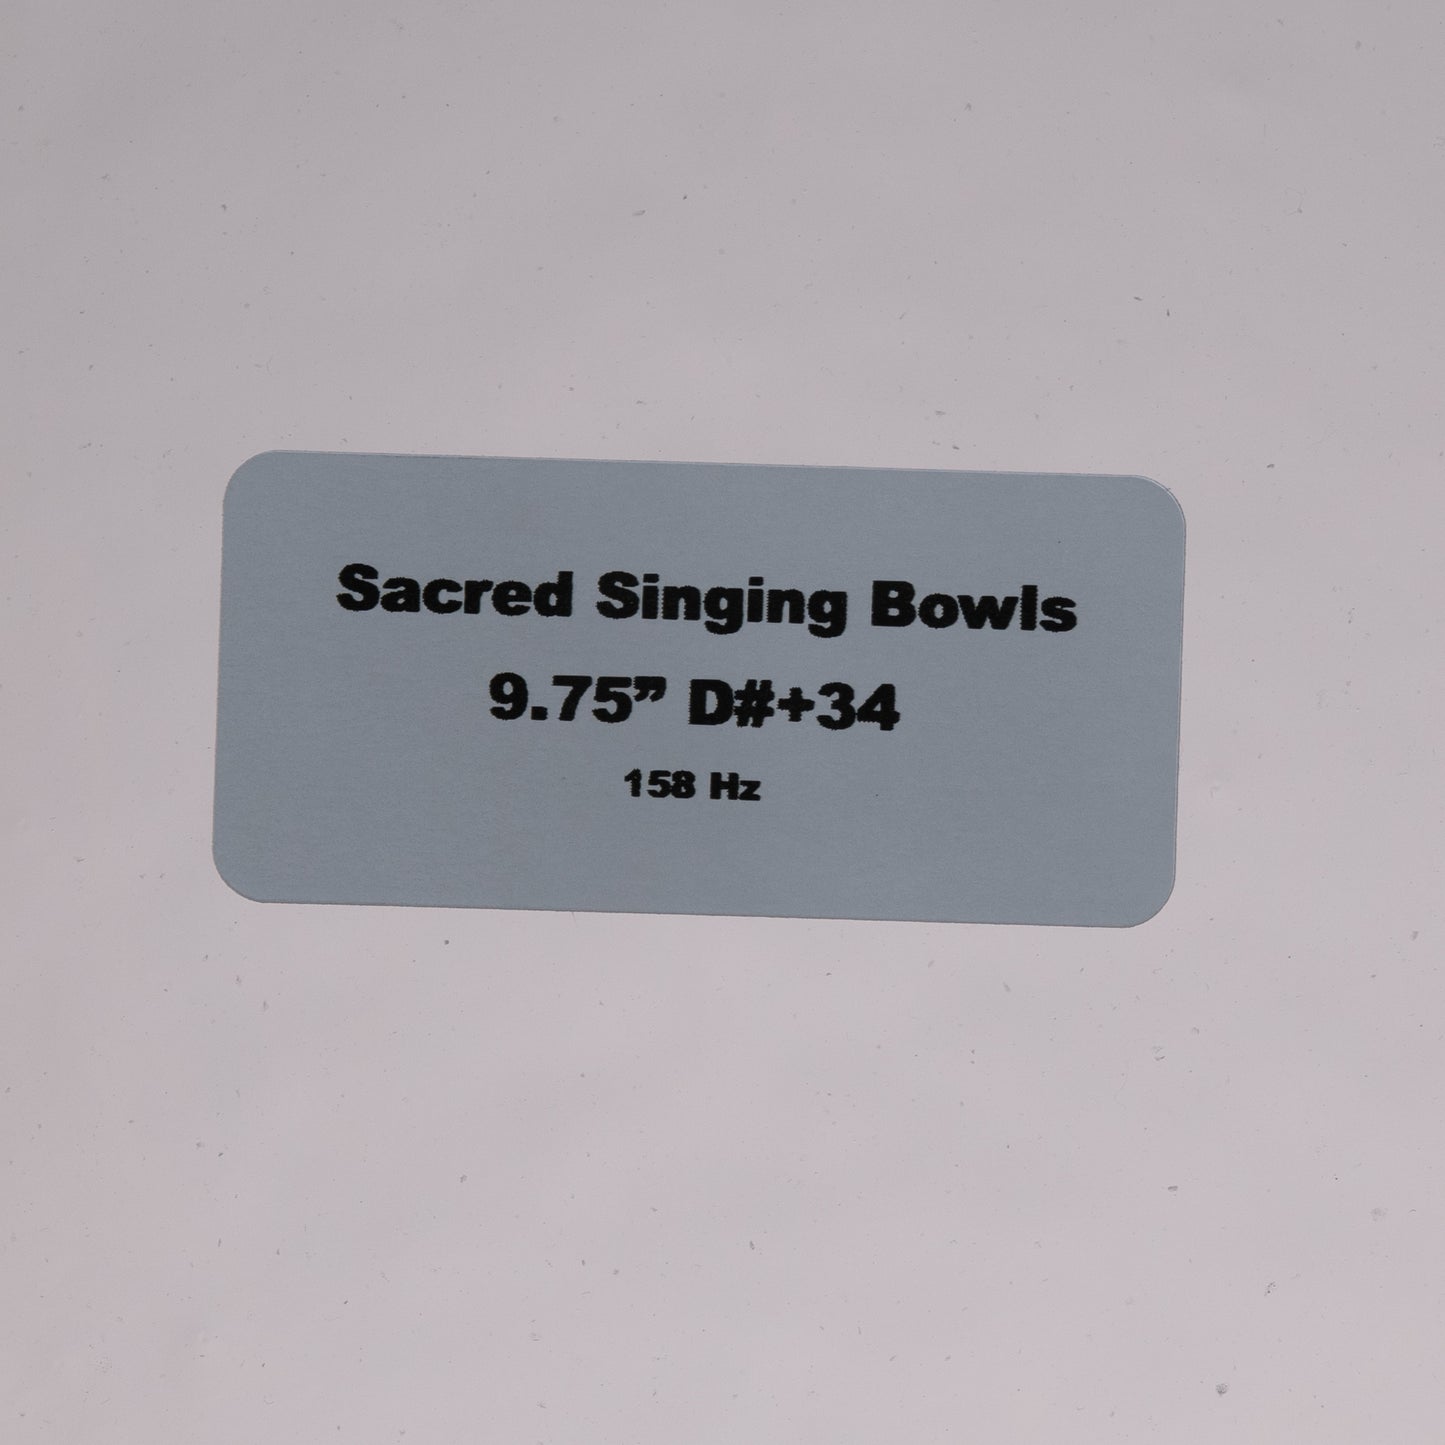 9.75" D#+34 Clear Quartz Crystal Singing Bowl, Sacred Singing Bowls